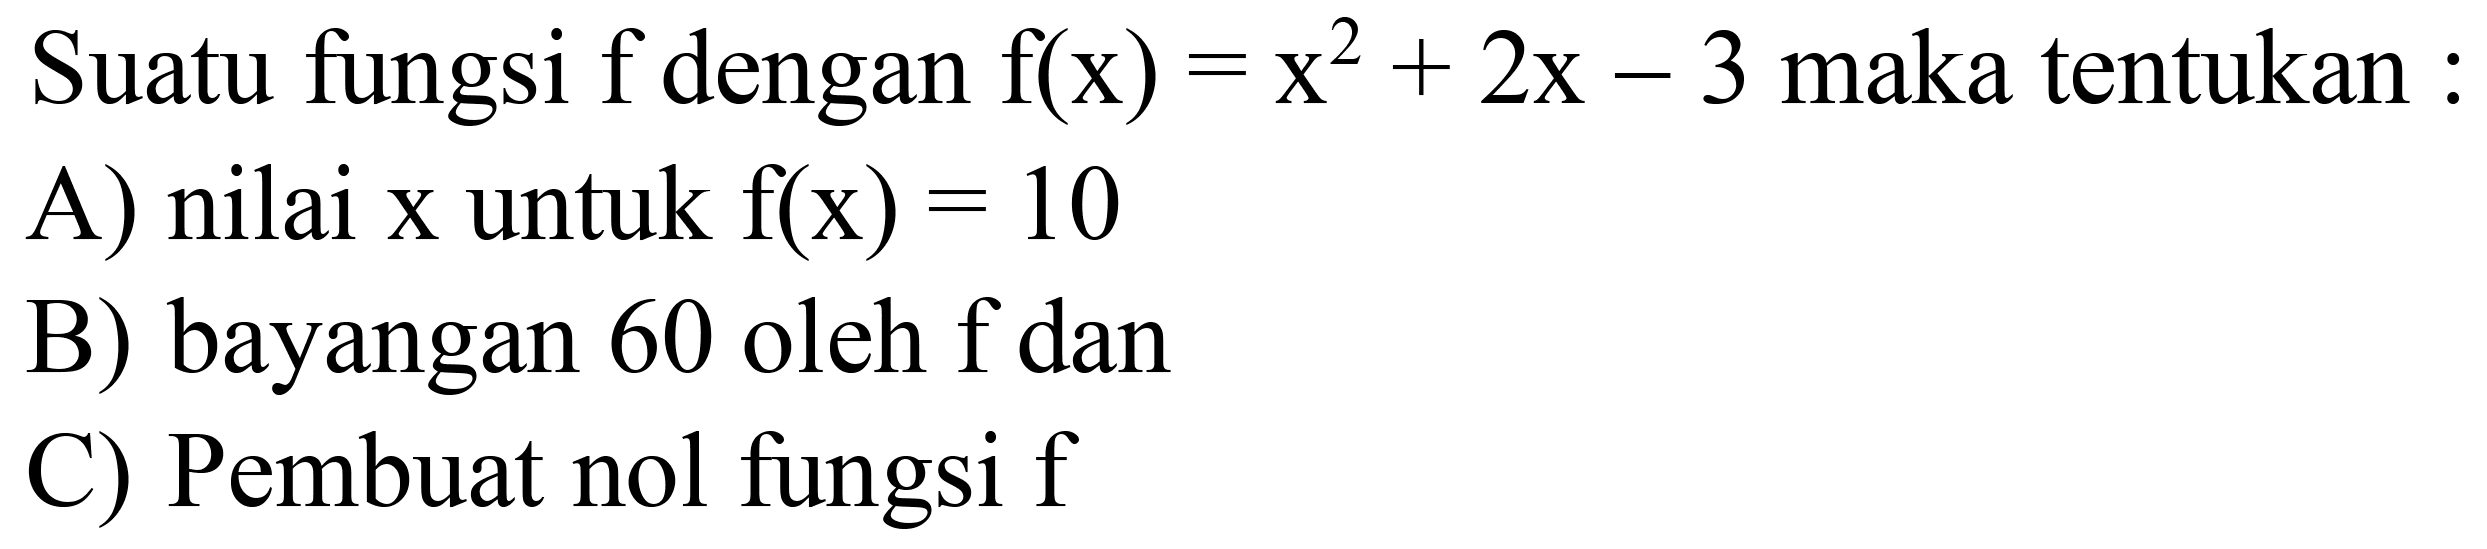 Suatu fungsi  f  dengan  f(x)=x^(2)+2 x-3  maka tentukan :
A) nilai  x  untuk  f(x)=10 
B) bayangan 60 oleh  f  dan
C) Pembuat nol fungsi  f 